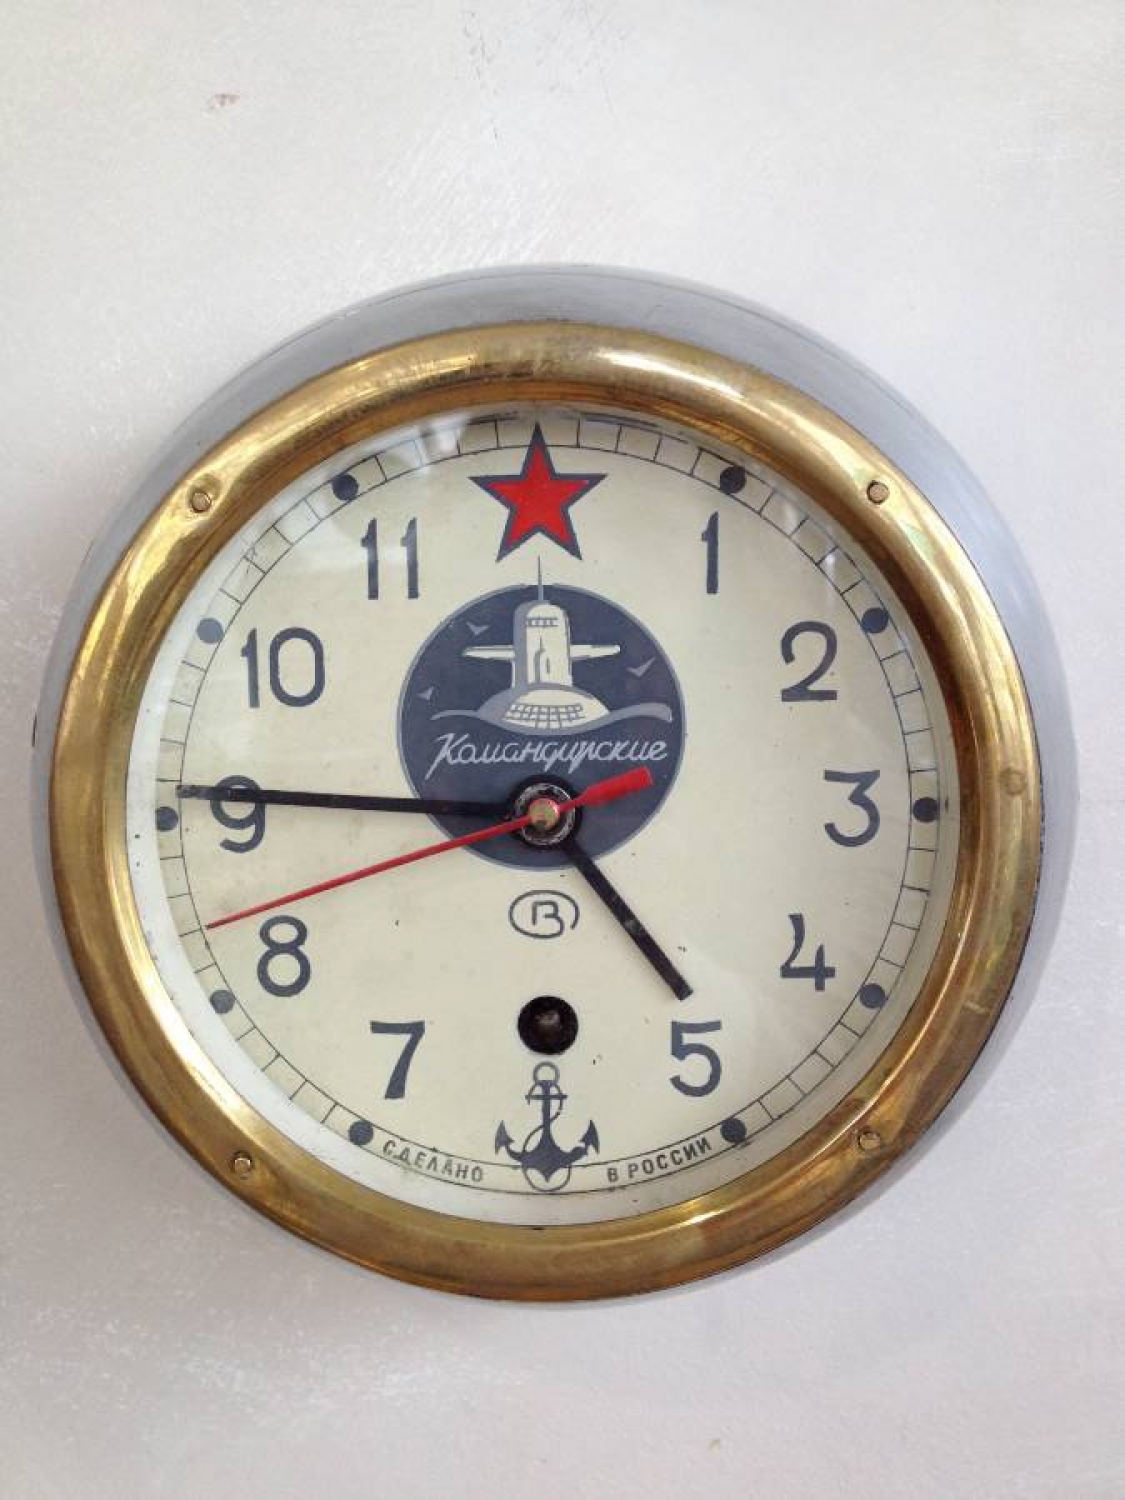 Original Russian Submarine clock